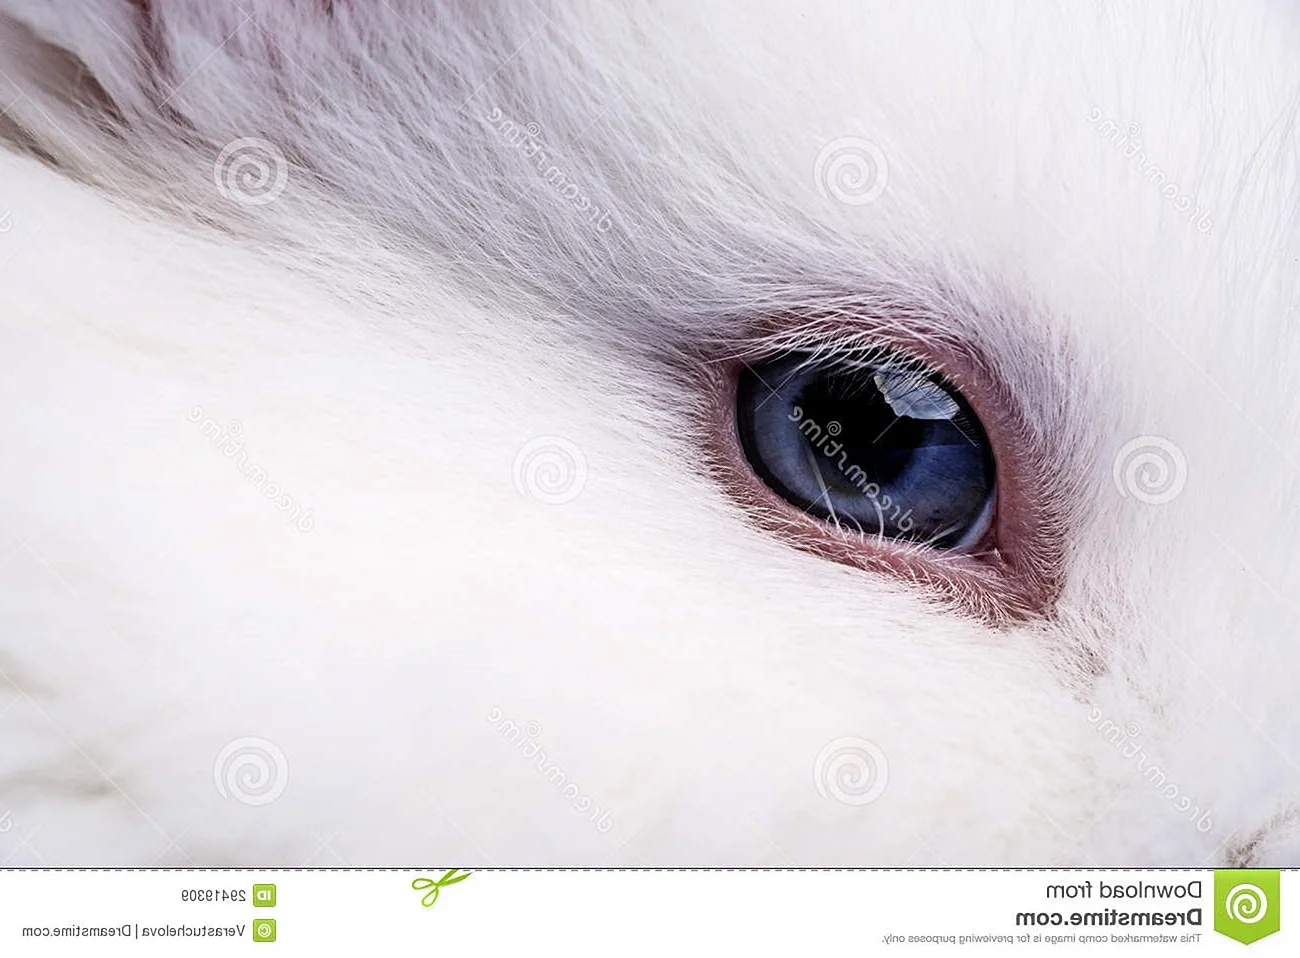 Кролик с голубыми глазами